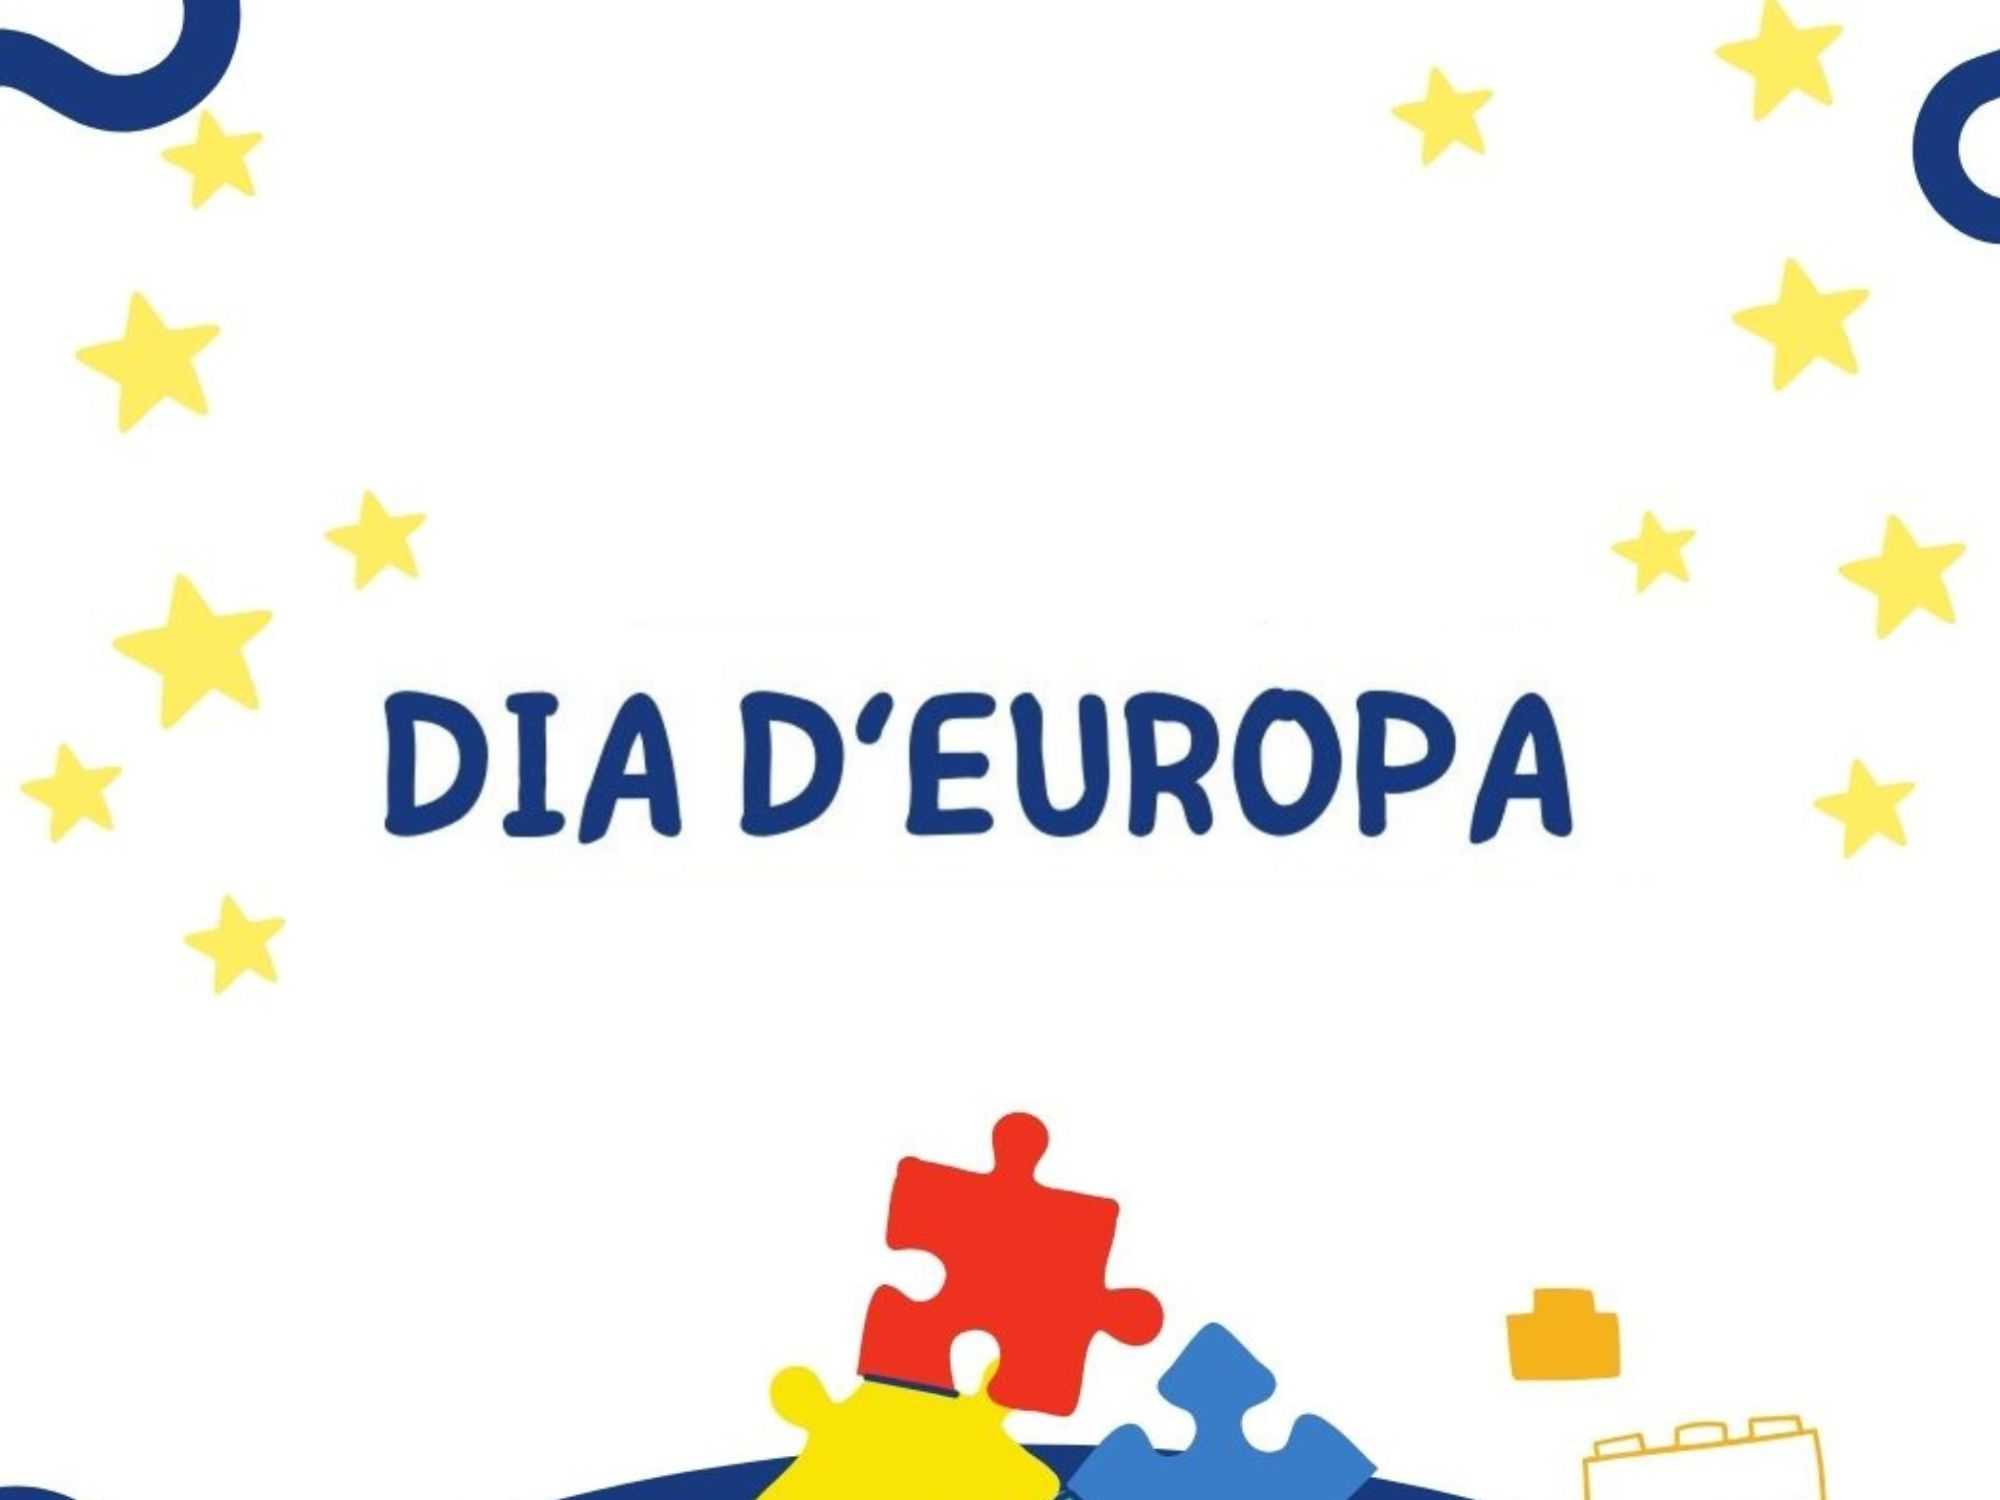 Día Europa